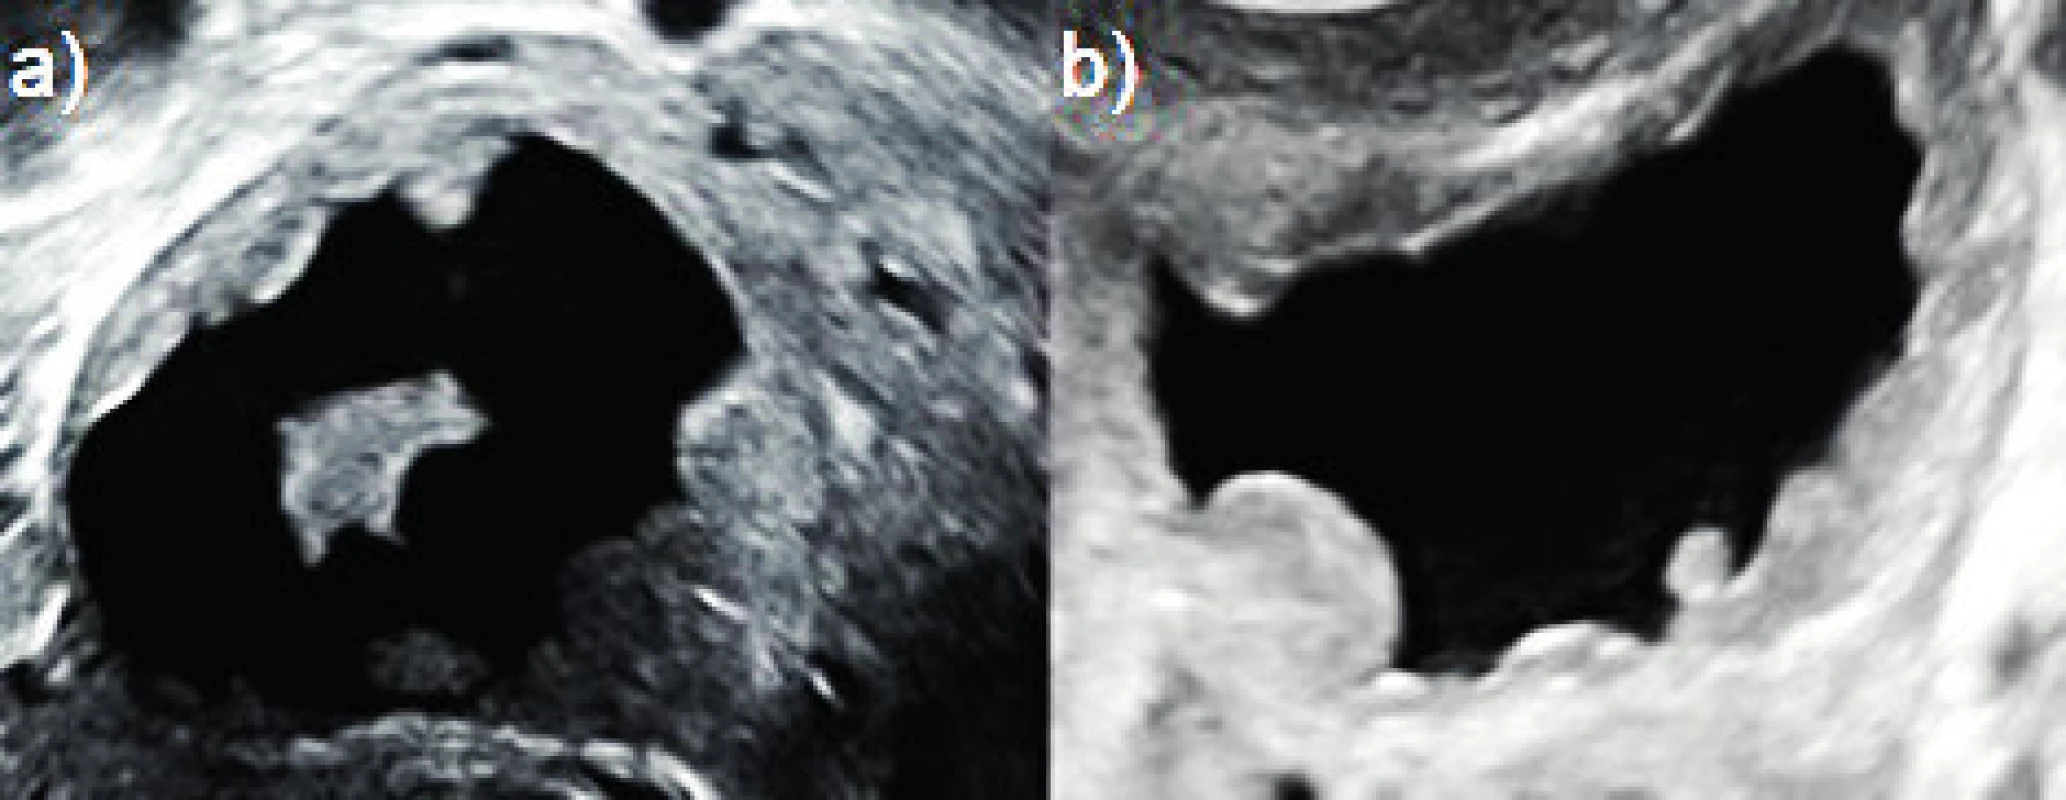 Decidualizované endometroidní cysty<br>
(a–b) unilokulární solidní tumory, intracysticky hypoechogenní
obsah, vnitřní výstelka cyst je pokryta papilaritami, které jsou oblé
a pravidelné s hladkým povrchem, v obou případech byly tumory
sledovány během těhotenství až do spontánní regrese solidních porcí
po šestinedělí.